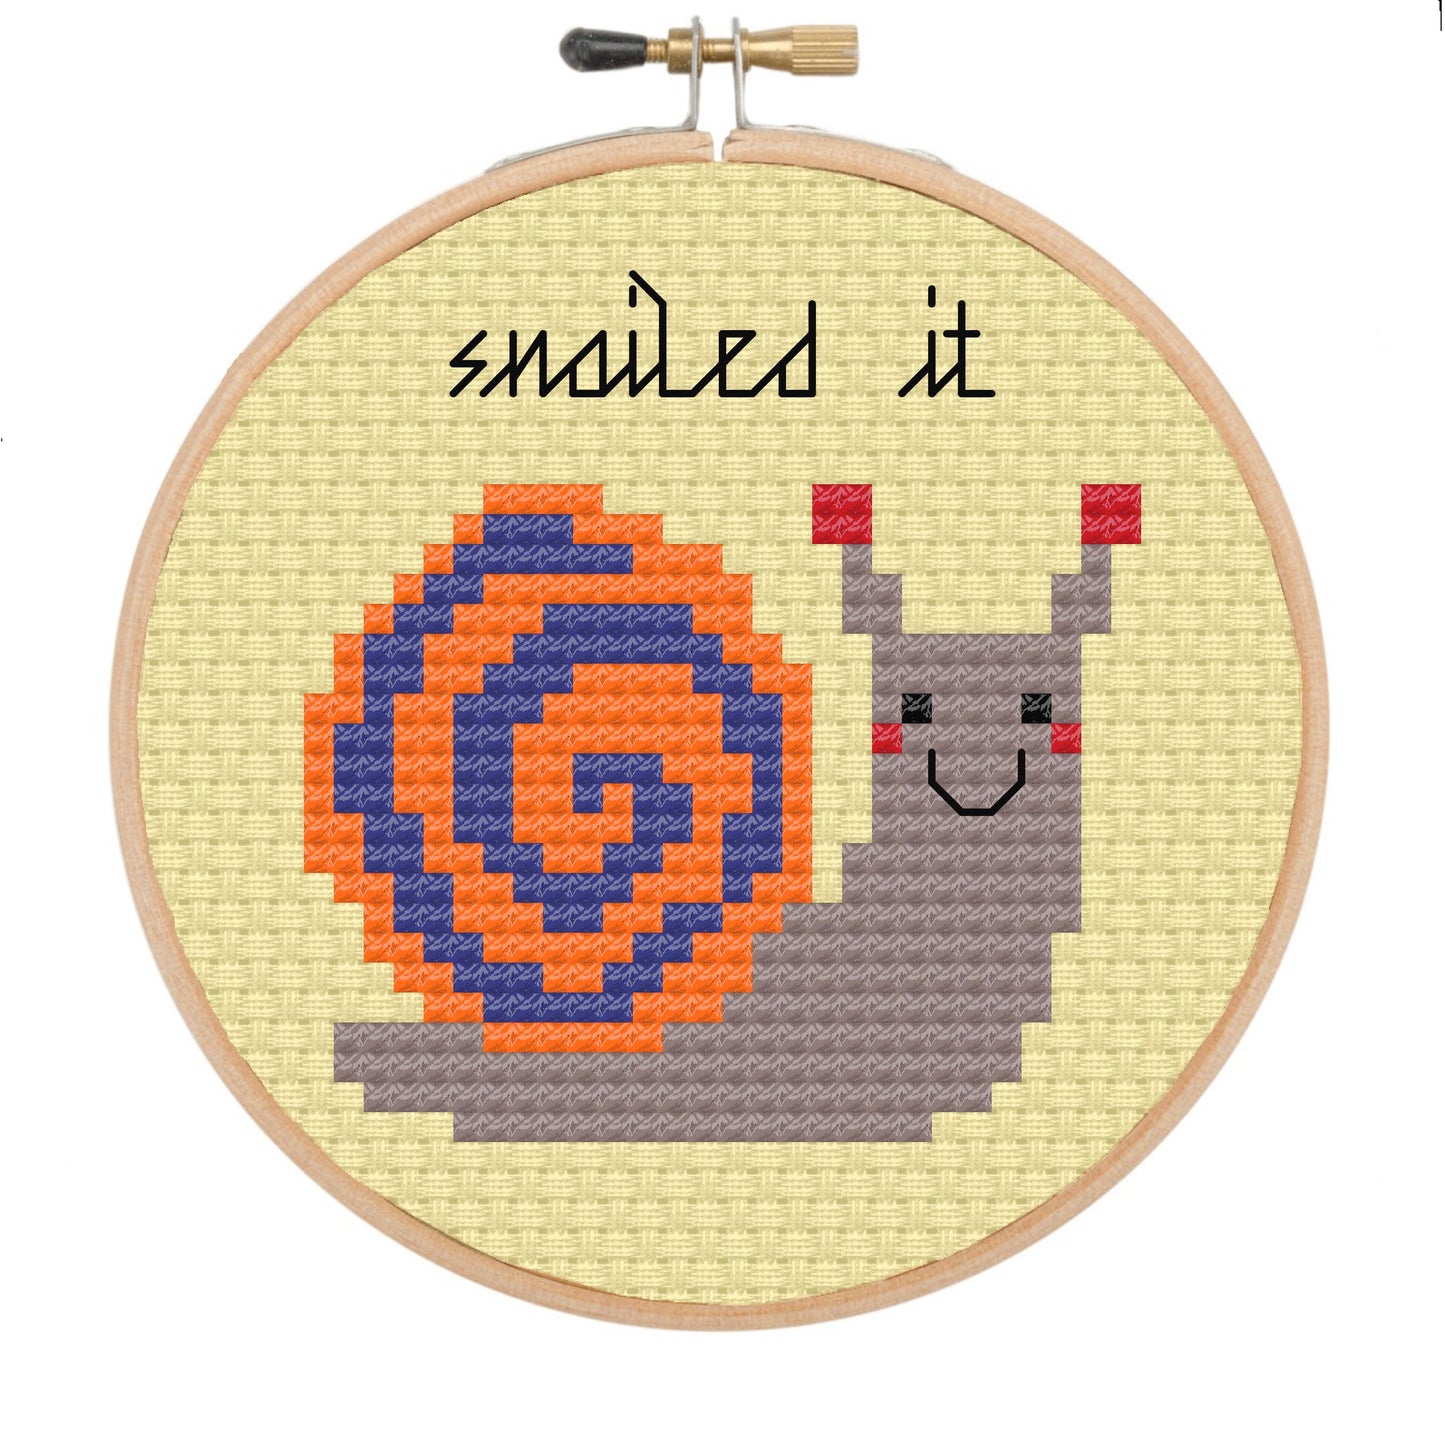 Snailed it  - *Cross Stitch Kit*